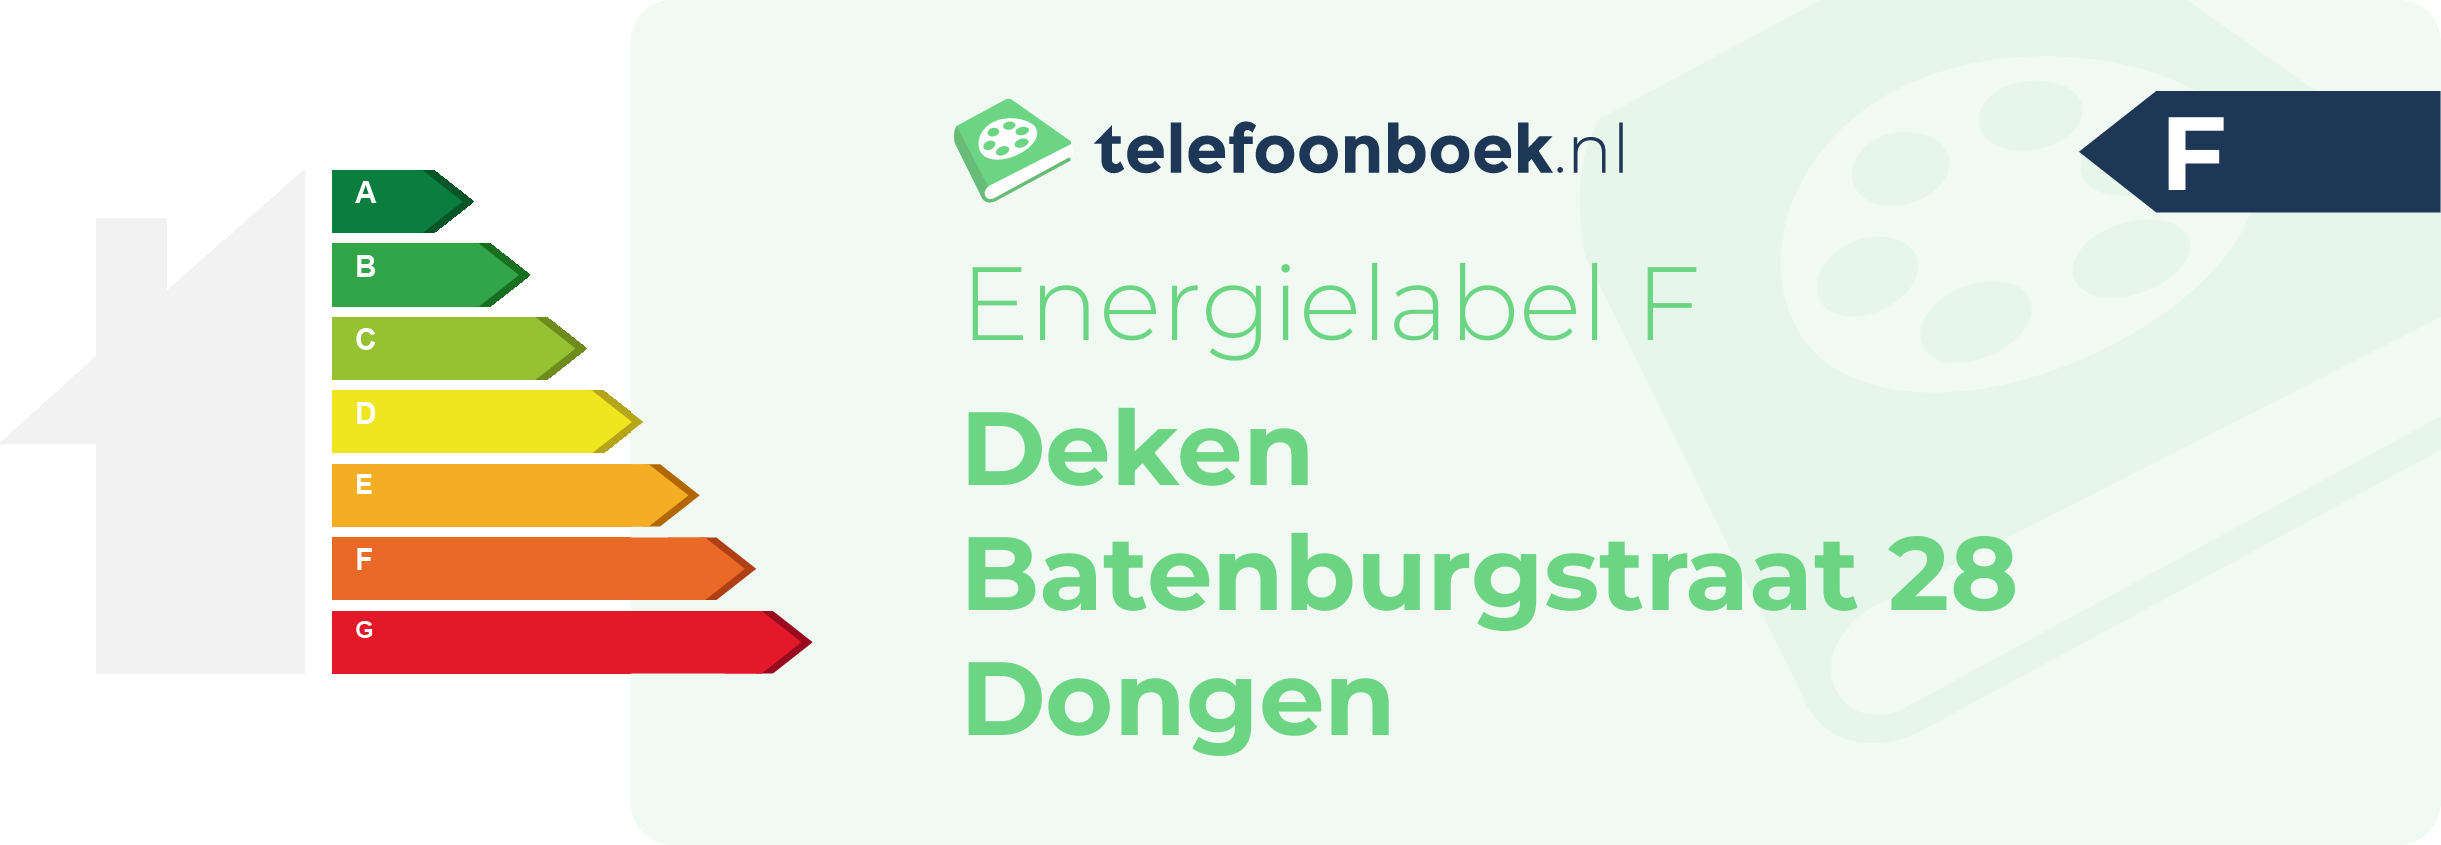 Energielabel Deken Batenburgstraat 28 Dongen